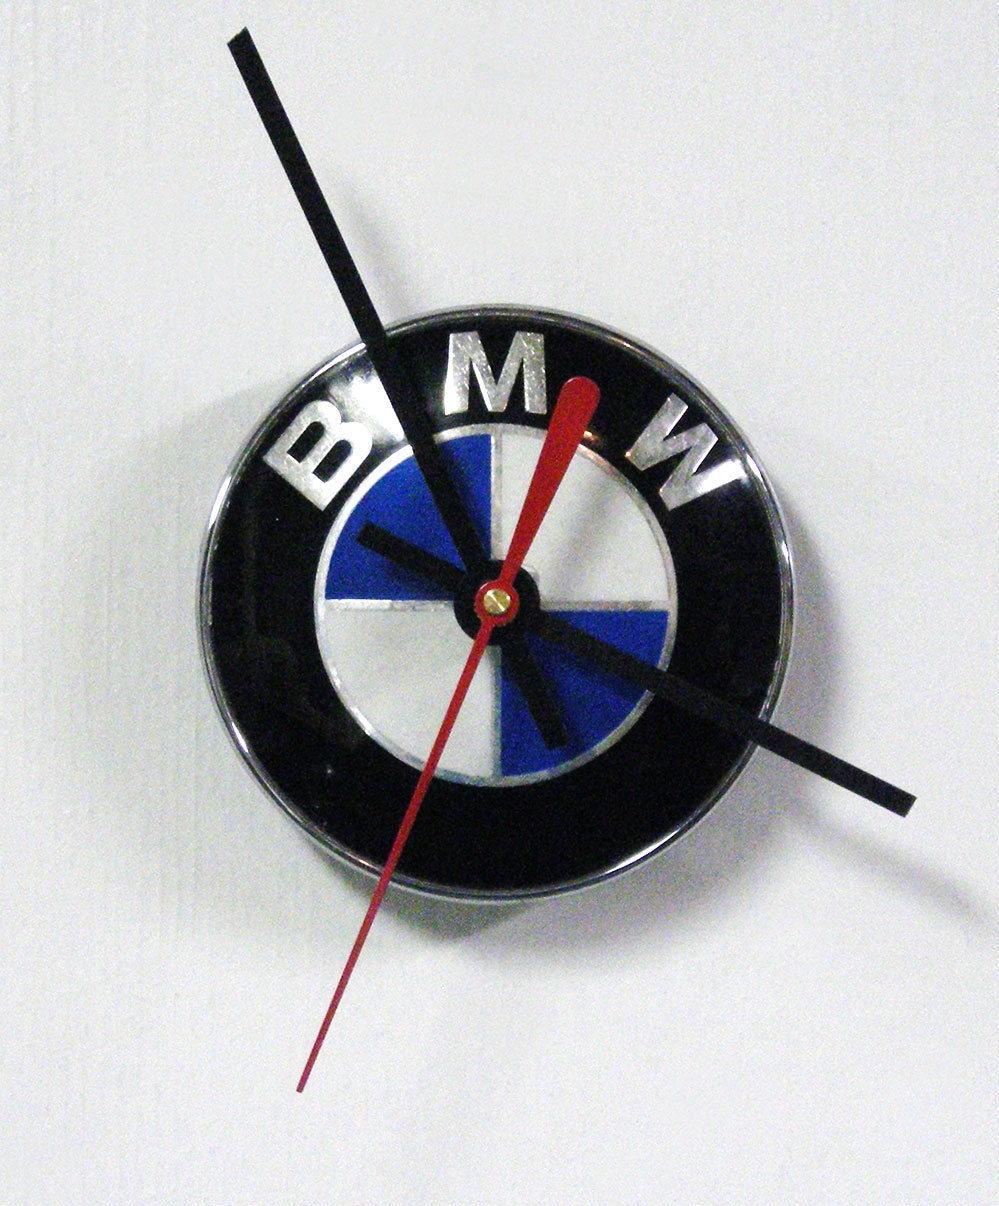 Bmw mini clock wall #1